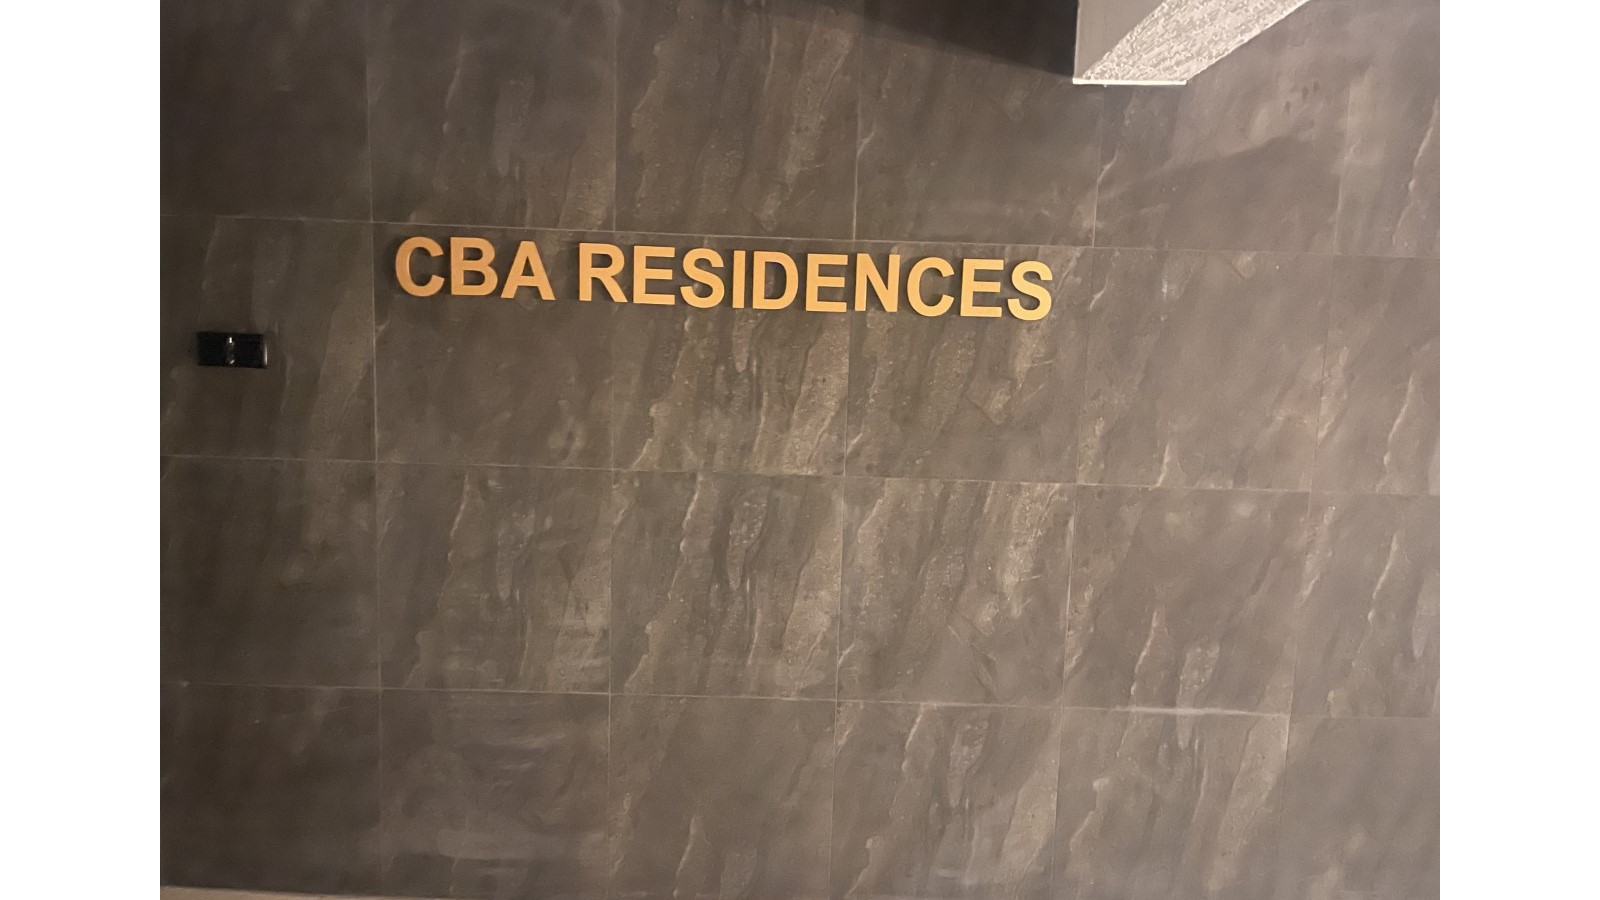 CBA Residences Logo on Building, Mesa Chorio, Cyprus